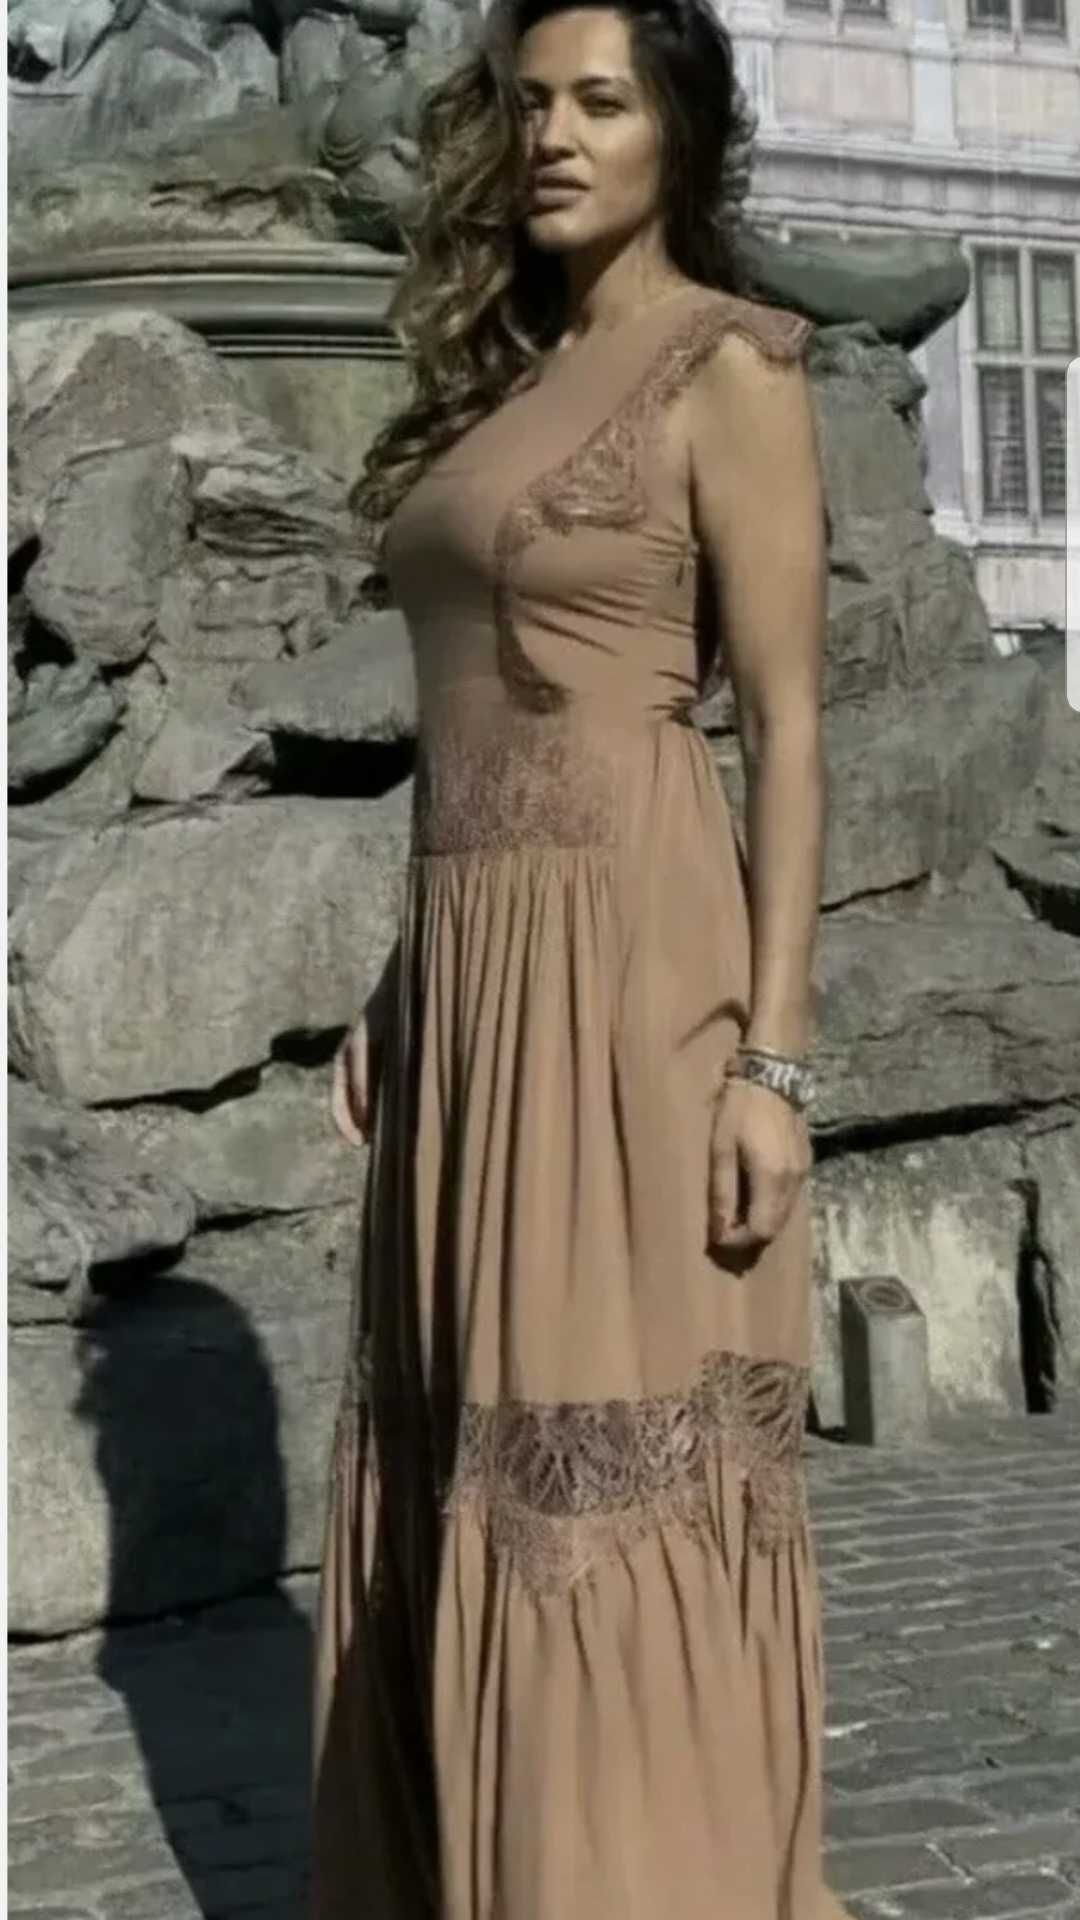 H&M Brazowa sukienka z koronka boho 36 S M wesele